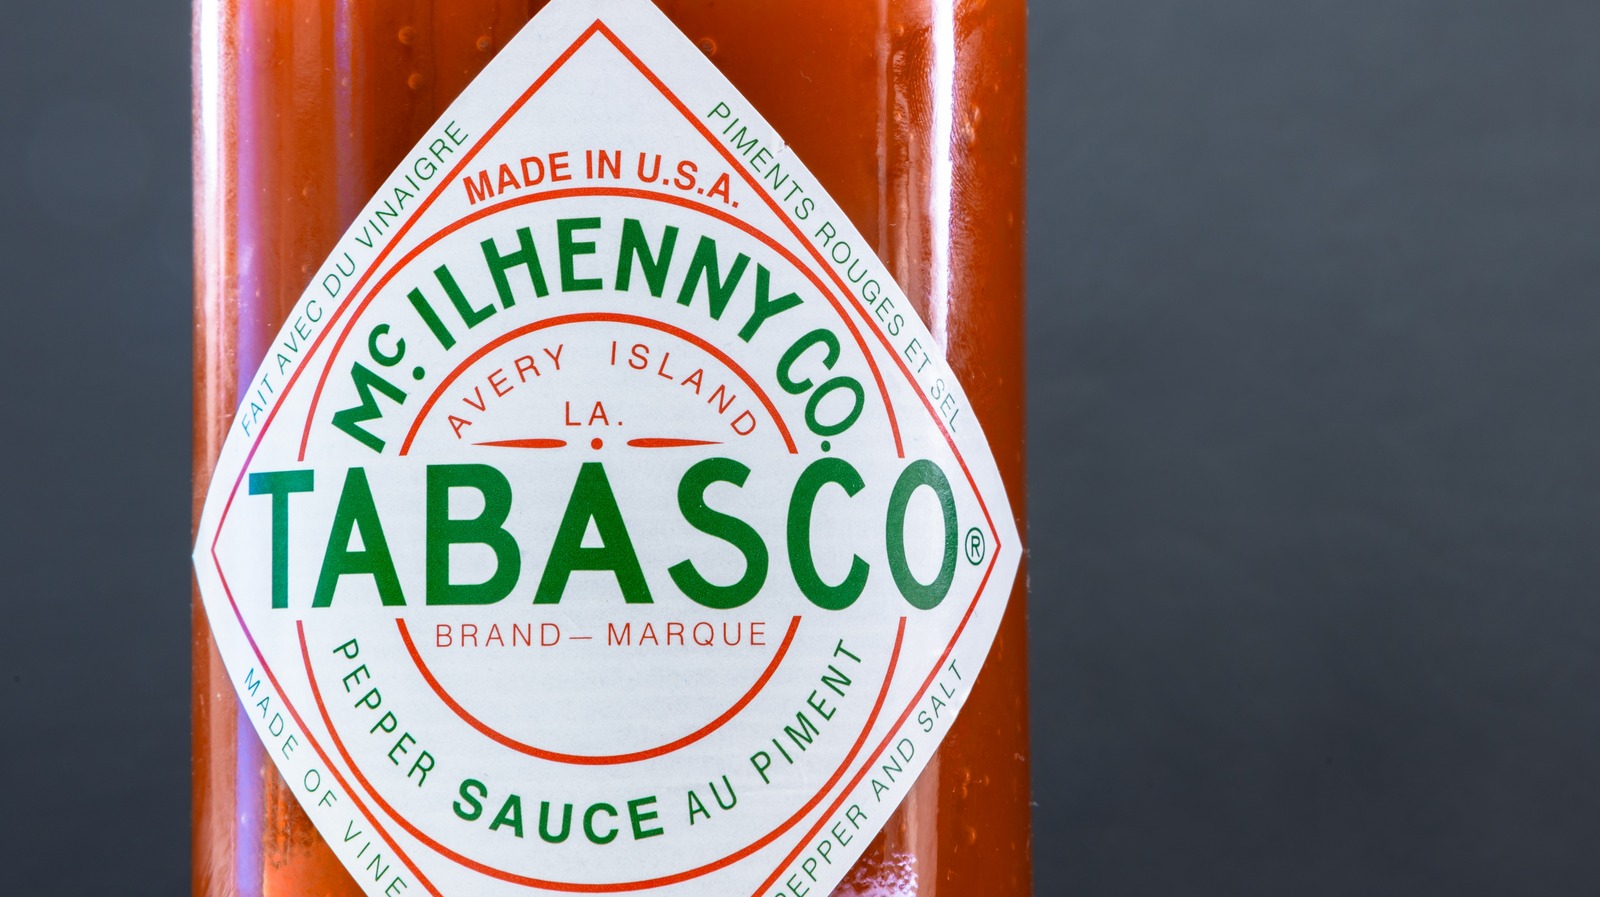 Der entscheidende Prozess hinter der ikonischen roten Farbe der Tabasco-Sauce